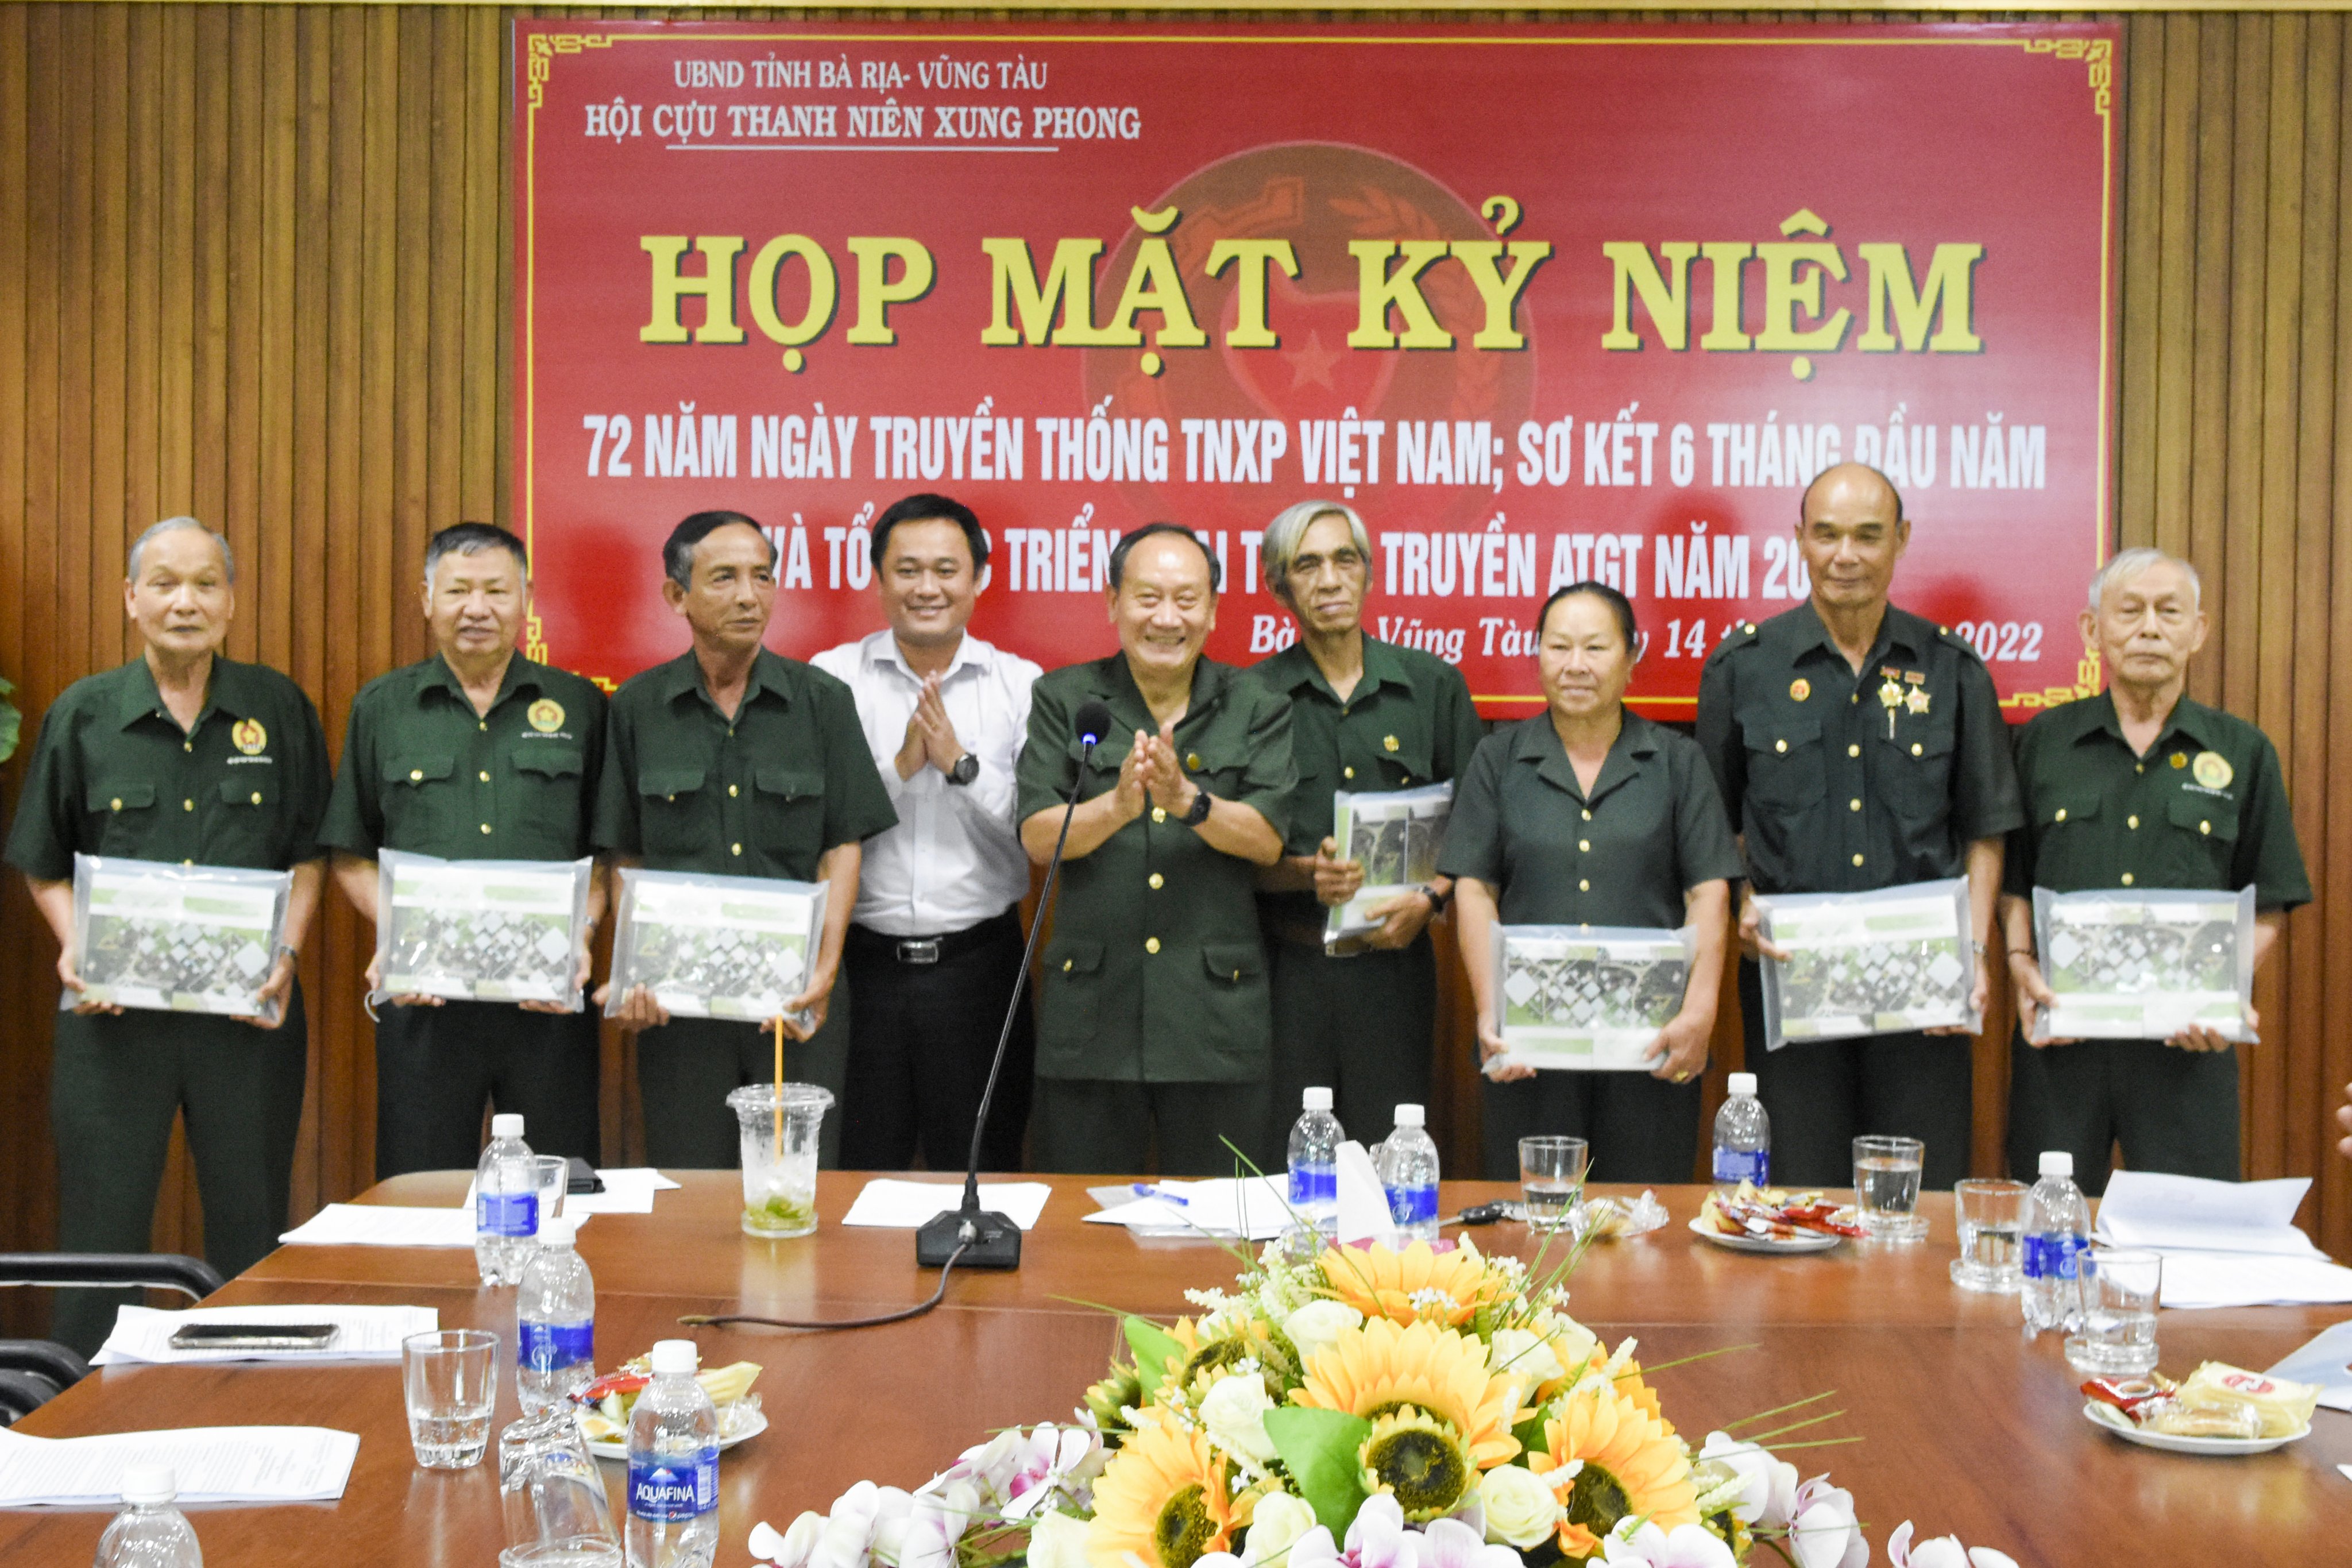 Các cựu TNXP họp mặt kỷ niệm 72 năm Ngày truyền thống TNXP Việt Nam.